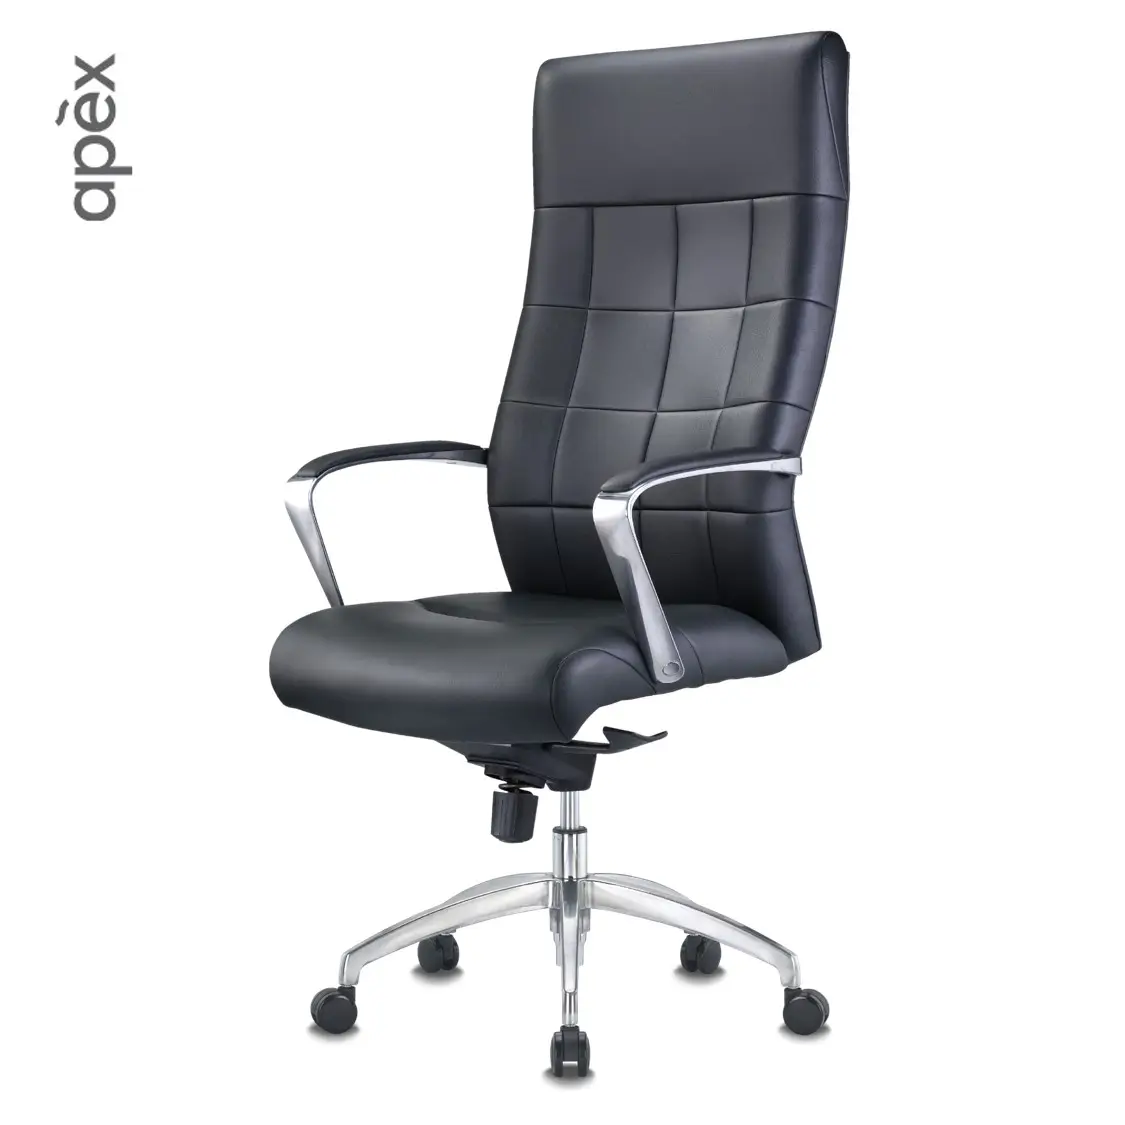 Офисная мебель в минималистичном стиле, эргономичное офисное кресло из искусственной кожи с высокой спинкой, современный хромированный подлокотник с регулируемой высотой для руководителя